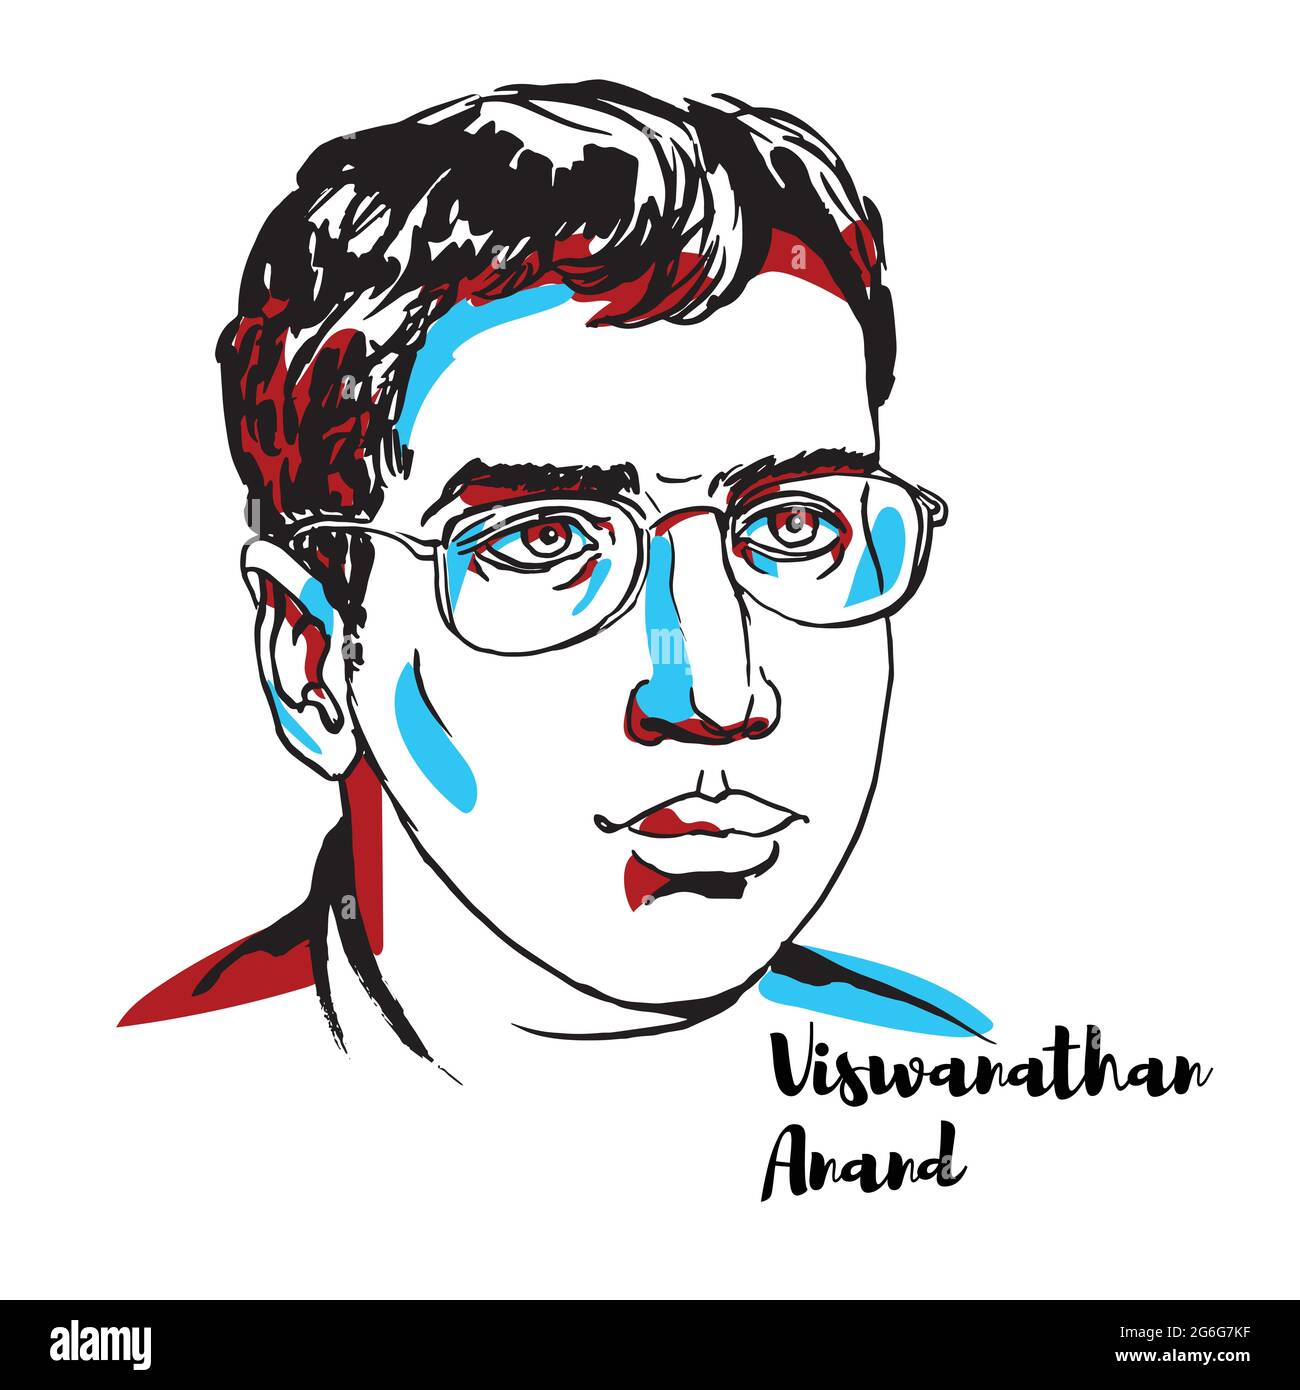 CHINE, CHENGHAI - 20 DÉCEMBRE 2018 : Viswanathan Anand Portrait vectoriel gravé avec contours encreurs. Grand-maître indien d'échecs et un ancien World Chess C Illustration de Vecteur